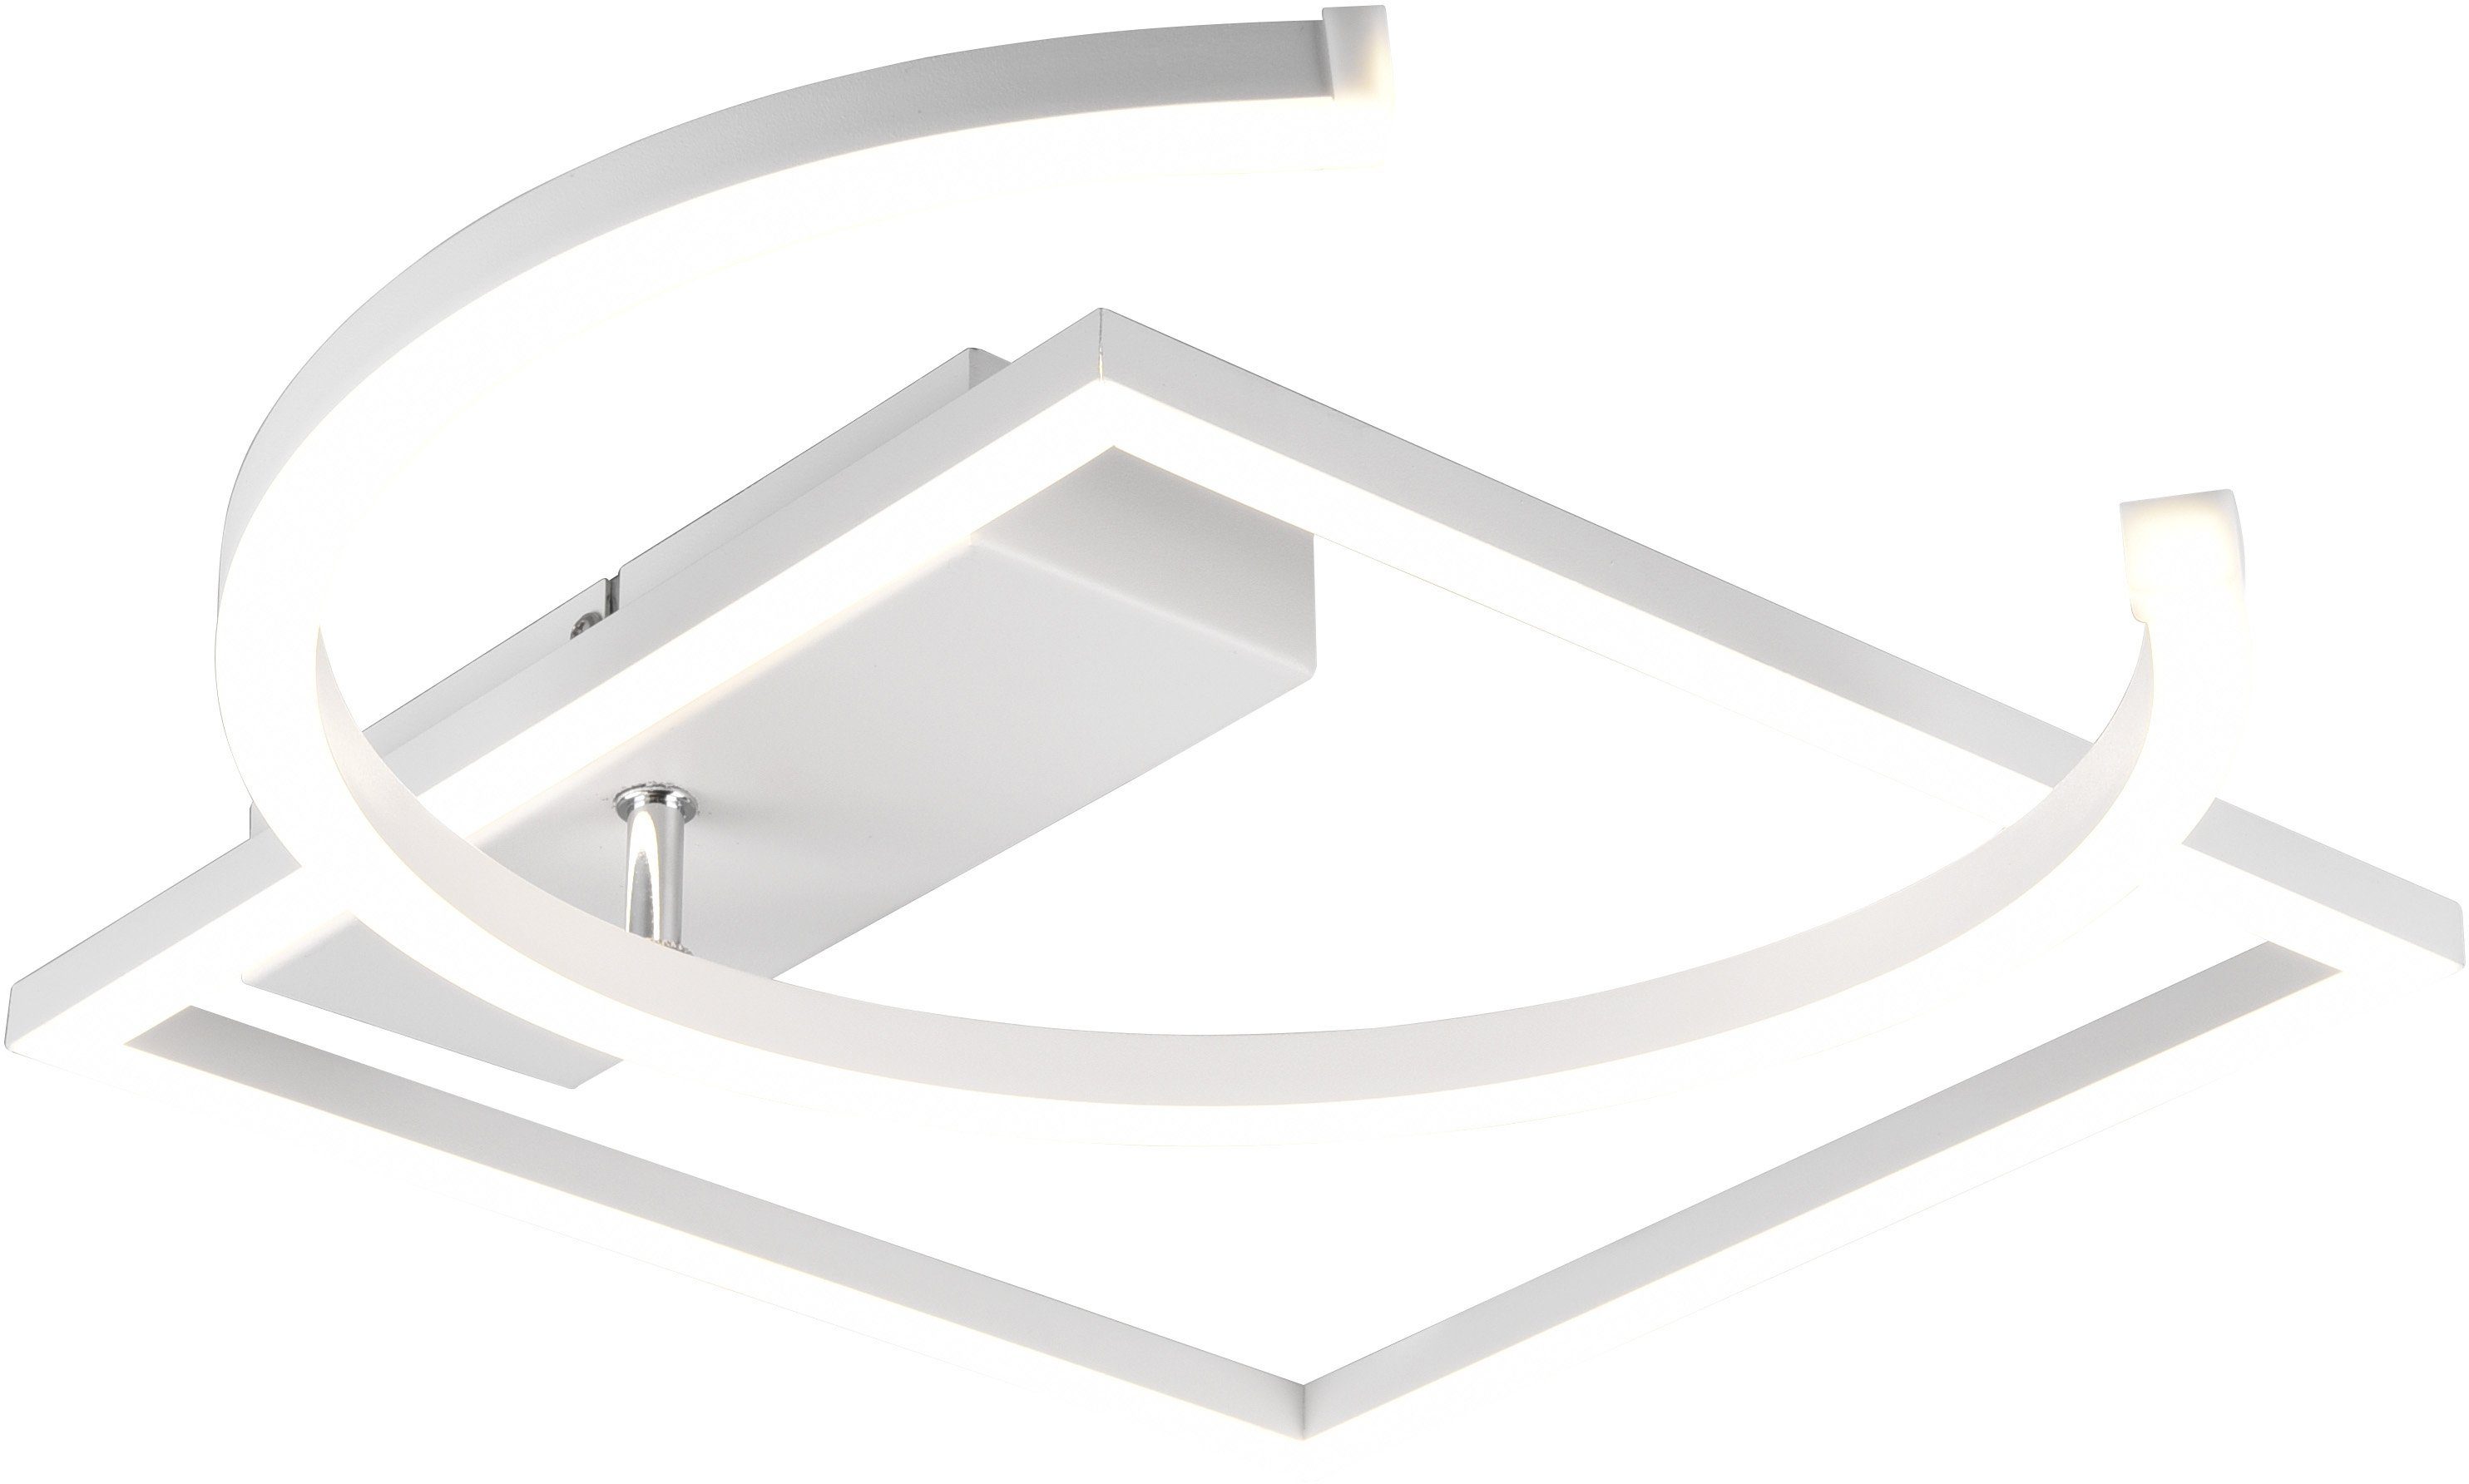 TRIO Leuchten integriert, fest PIVOT, dimmbar, mehrere Wand-und Deckenleuchte LED Neutralweiß, Deckenmontage über Wandschalter zur Helligkeitsstufen, geeignet LED